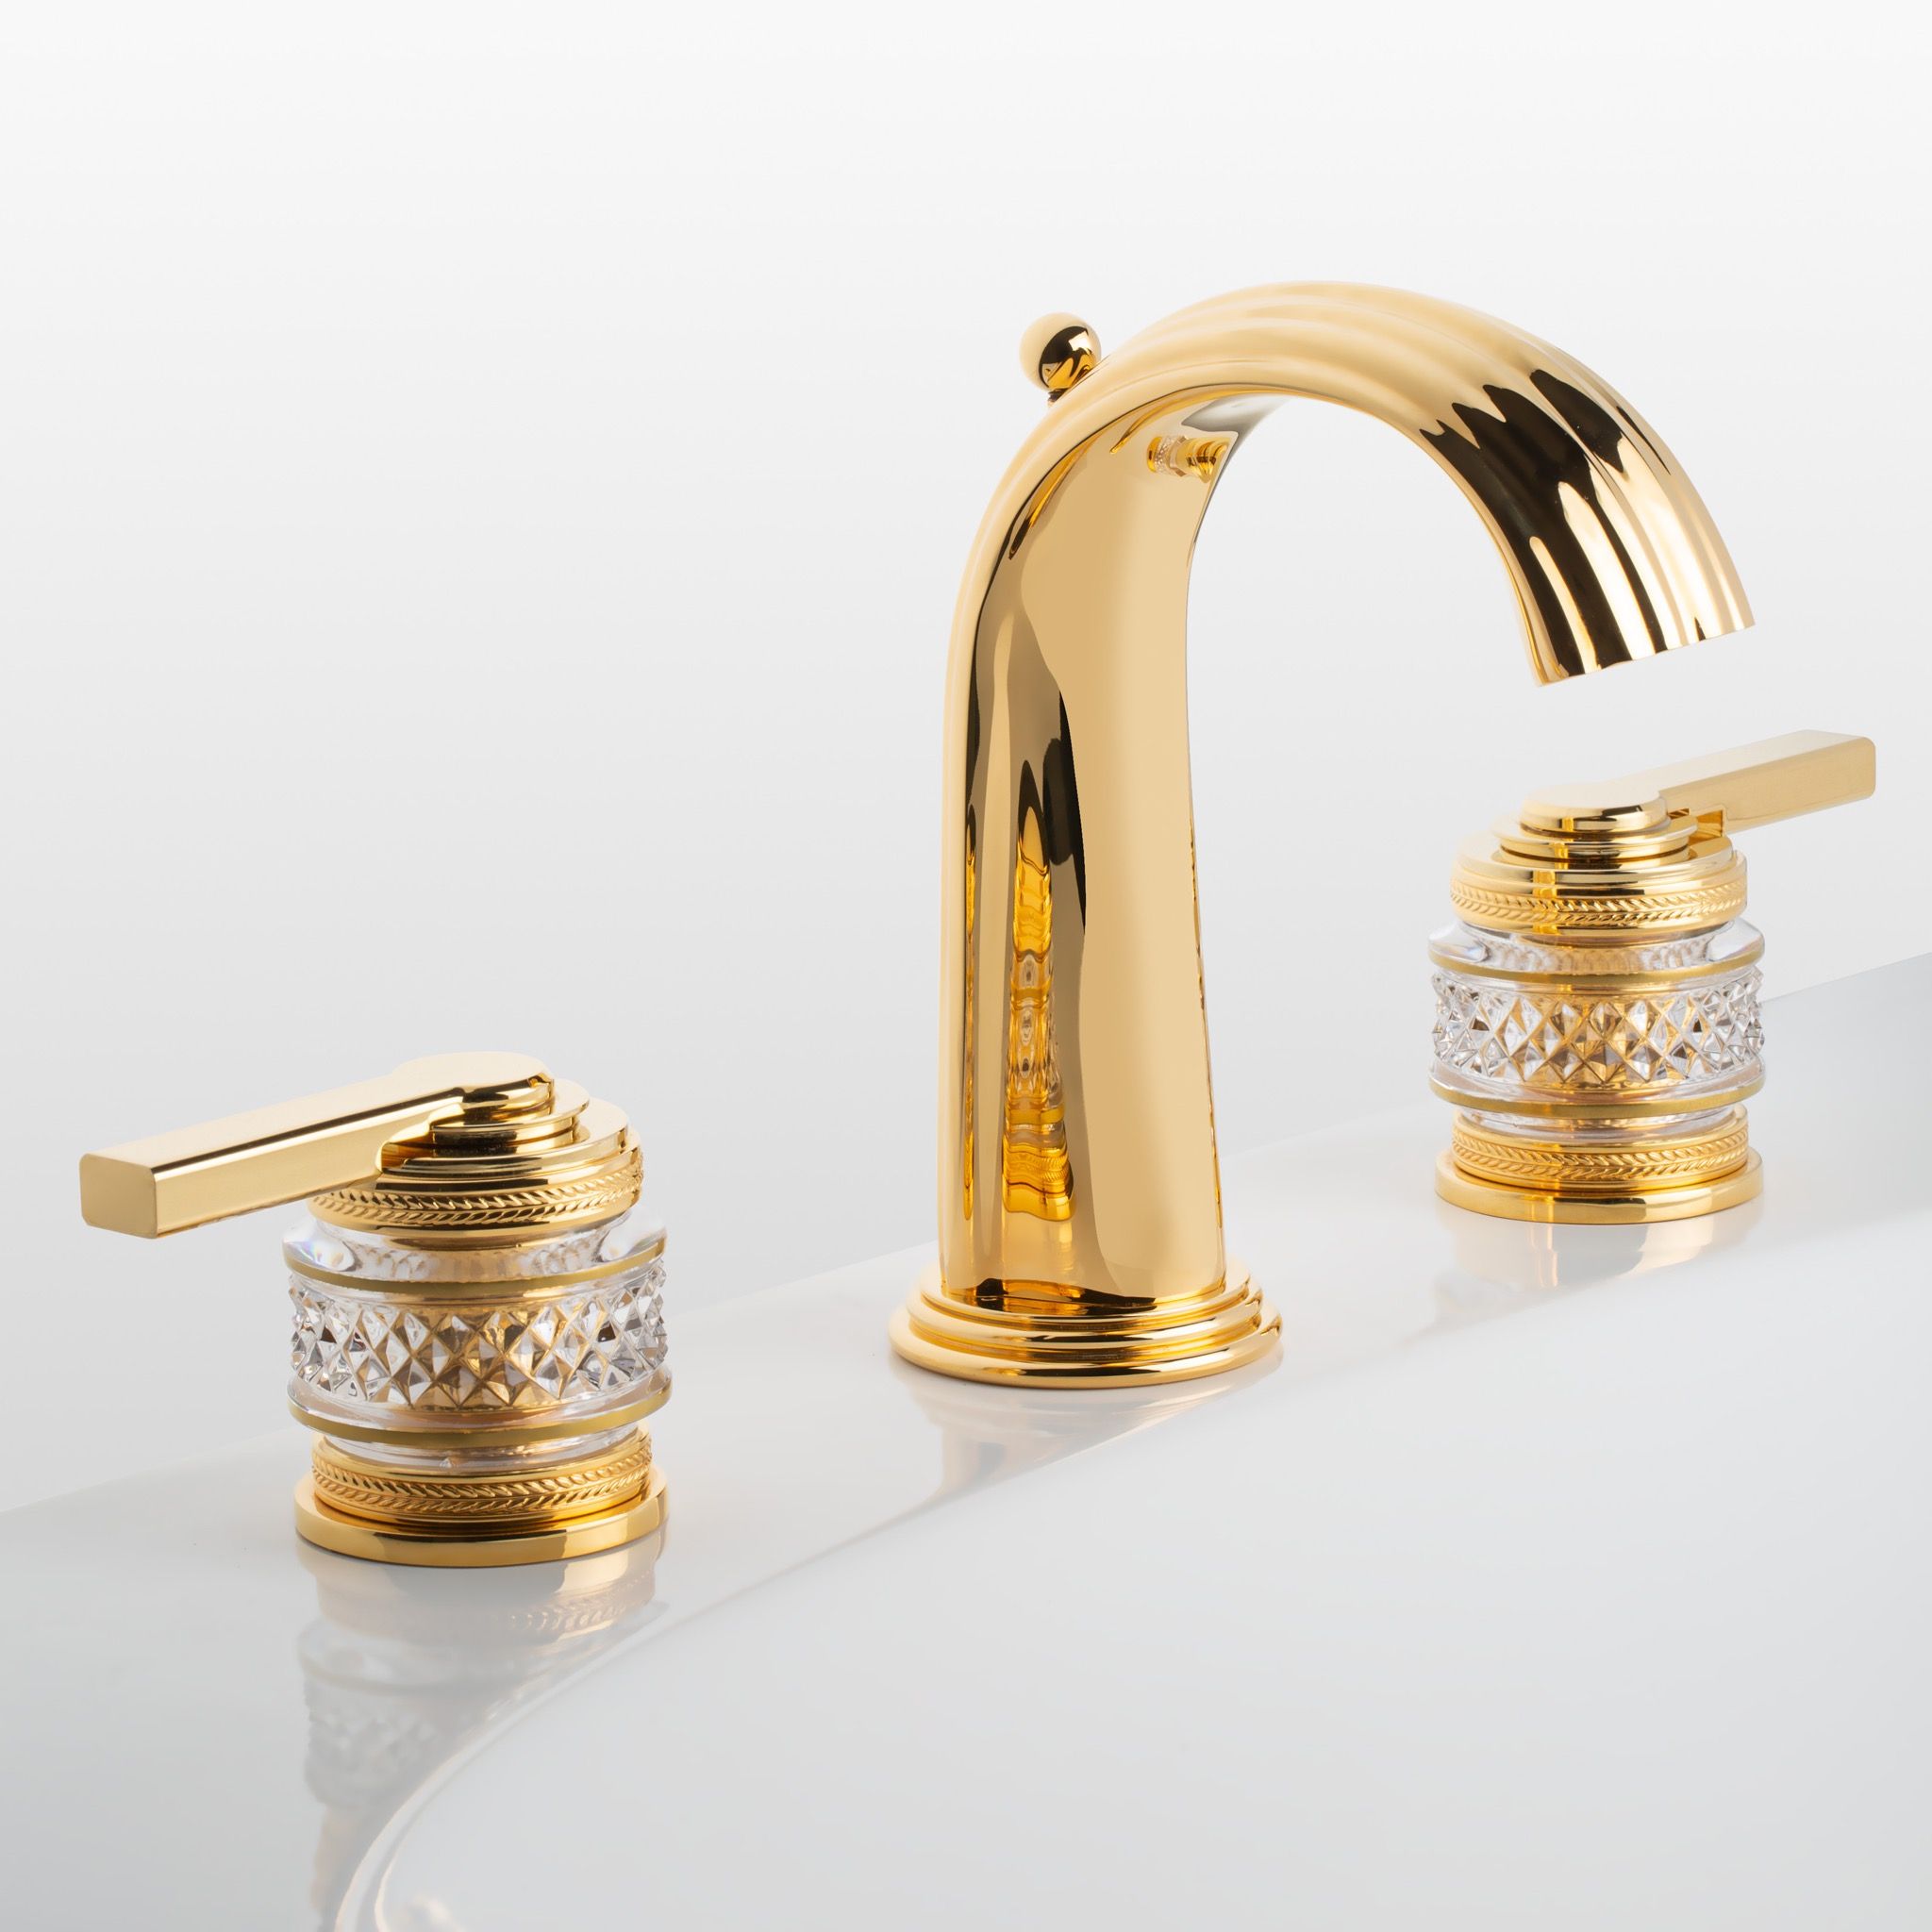  Vòi chậu rửa mặt cổ điển Quadrille Prestige Lever polished gold bằng đồng - 1301 